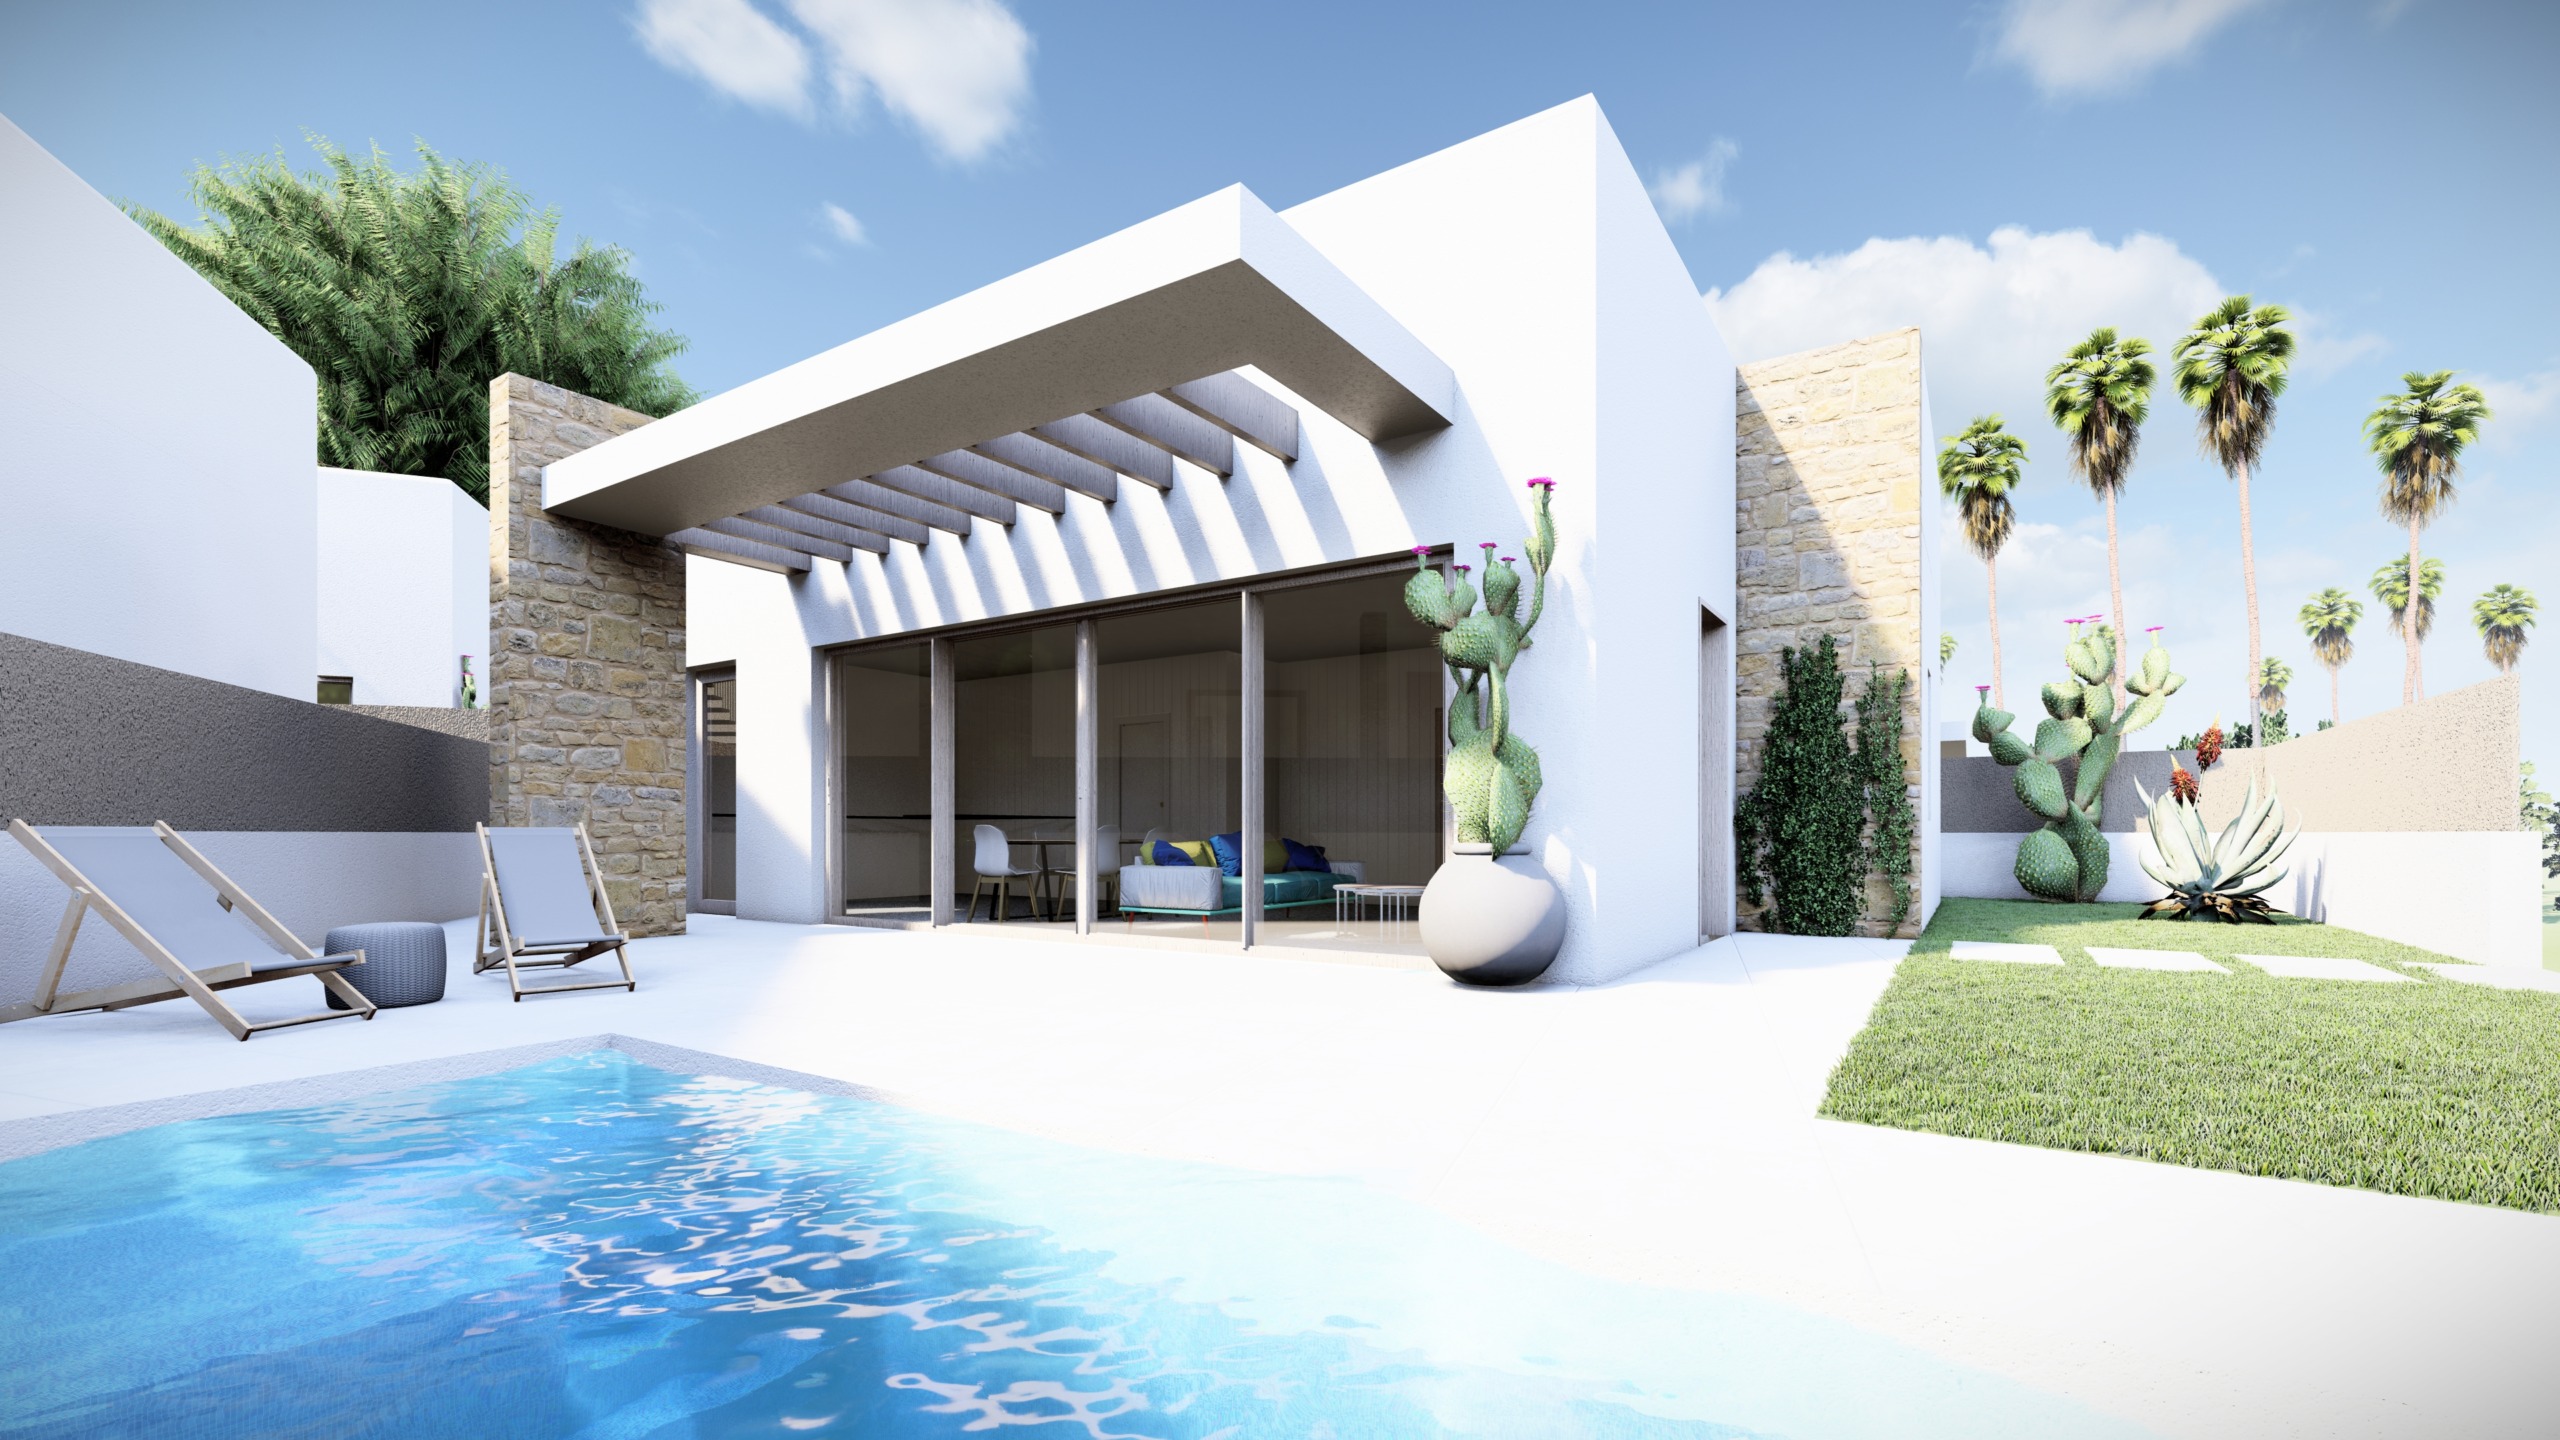 Vrijstaande villa in Ibiza-stijl